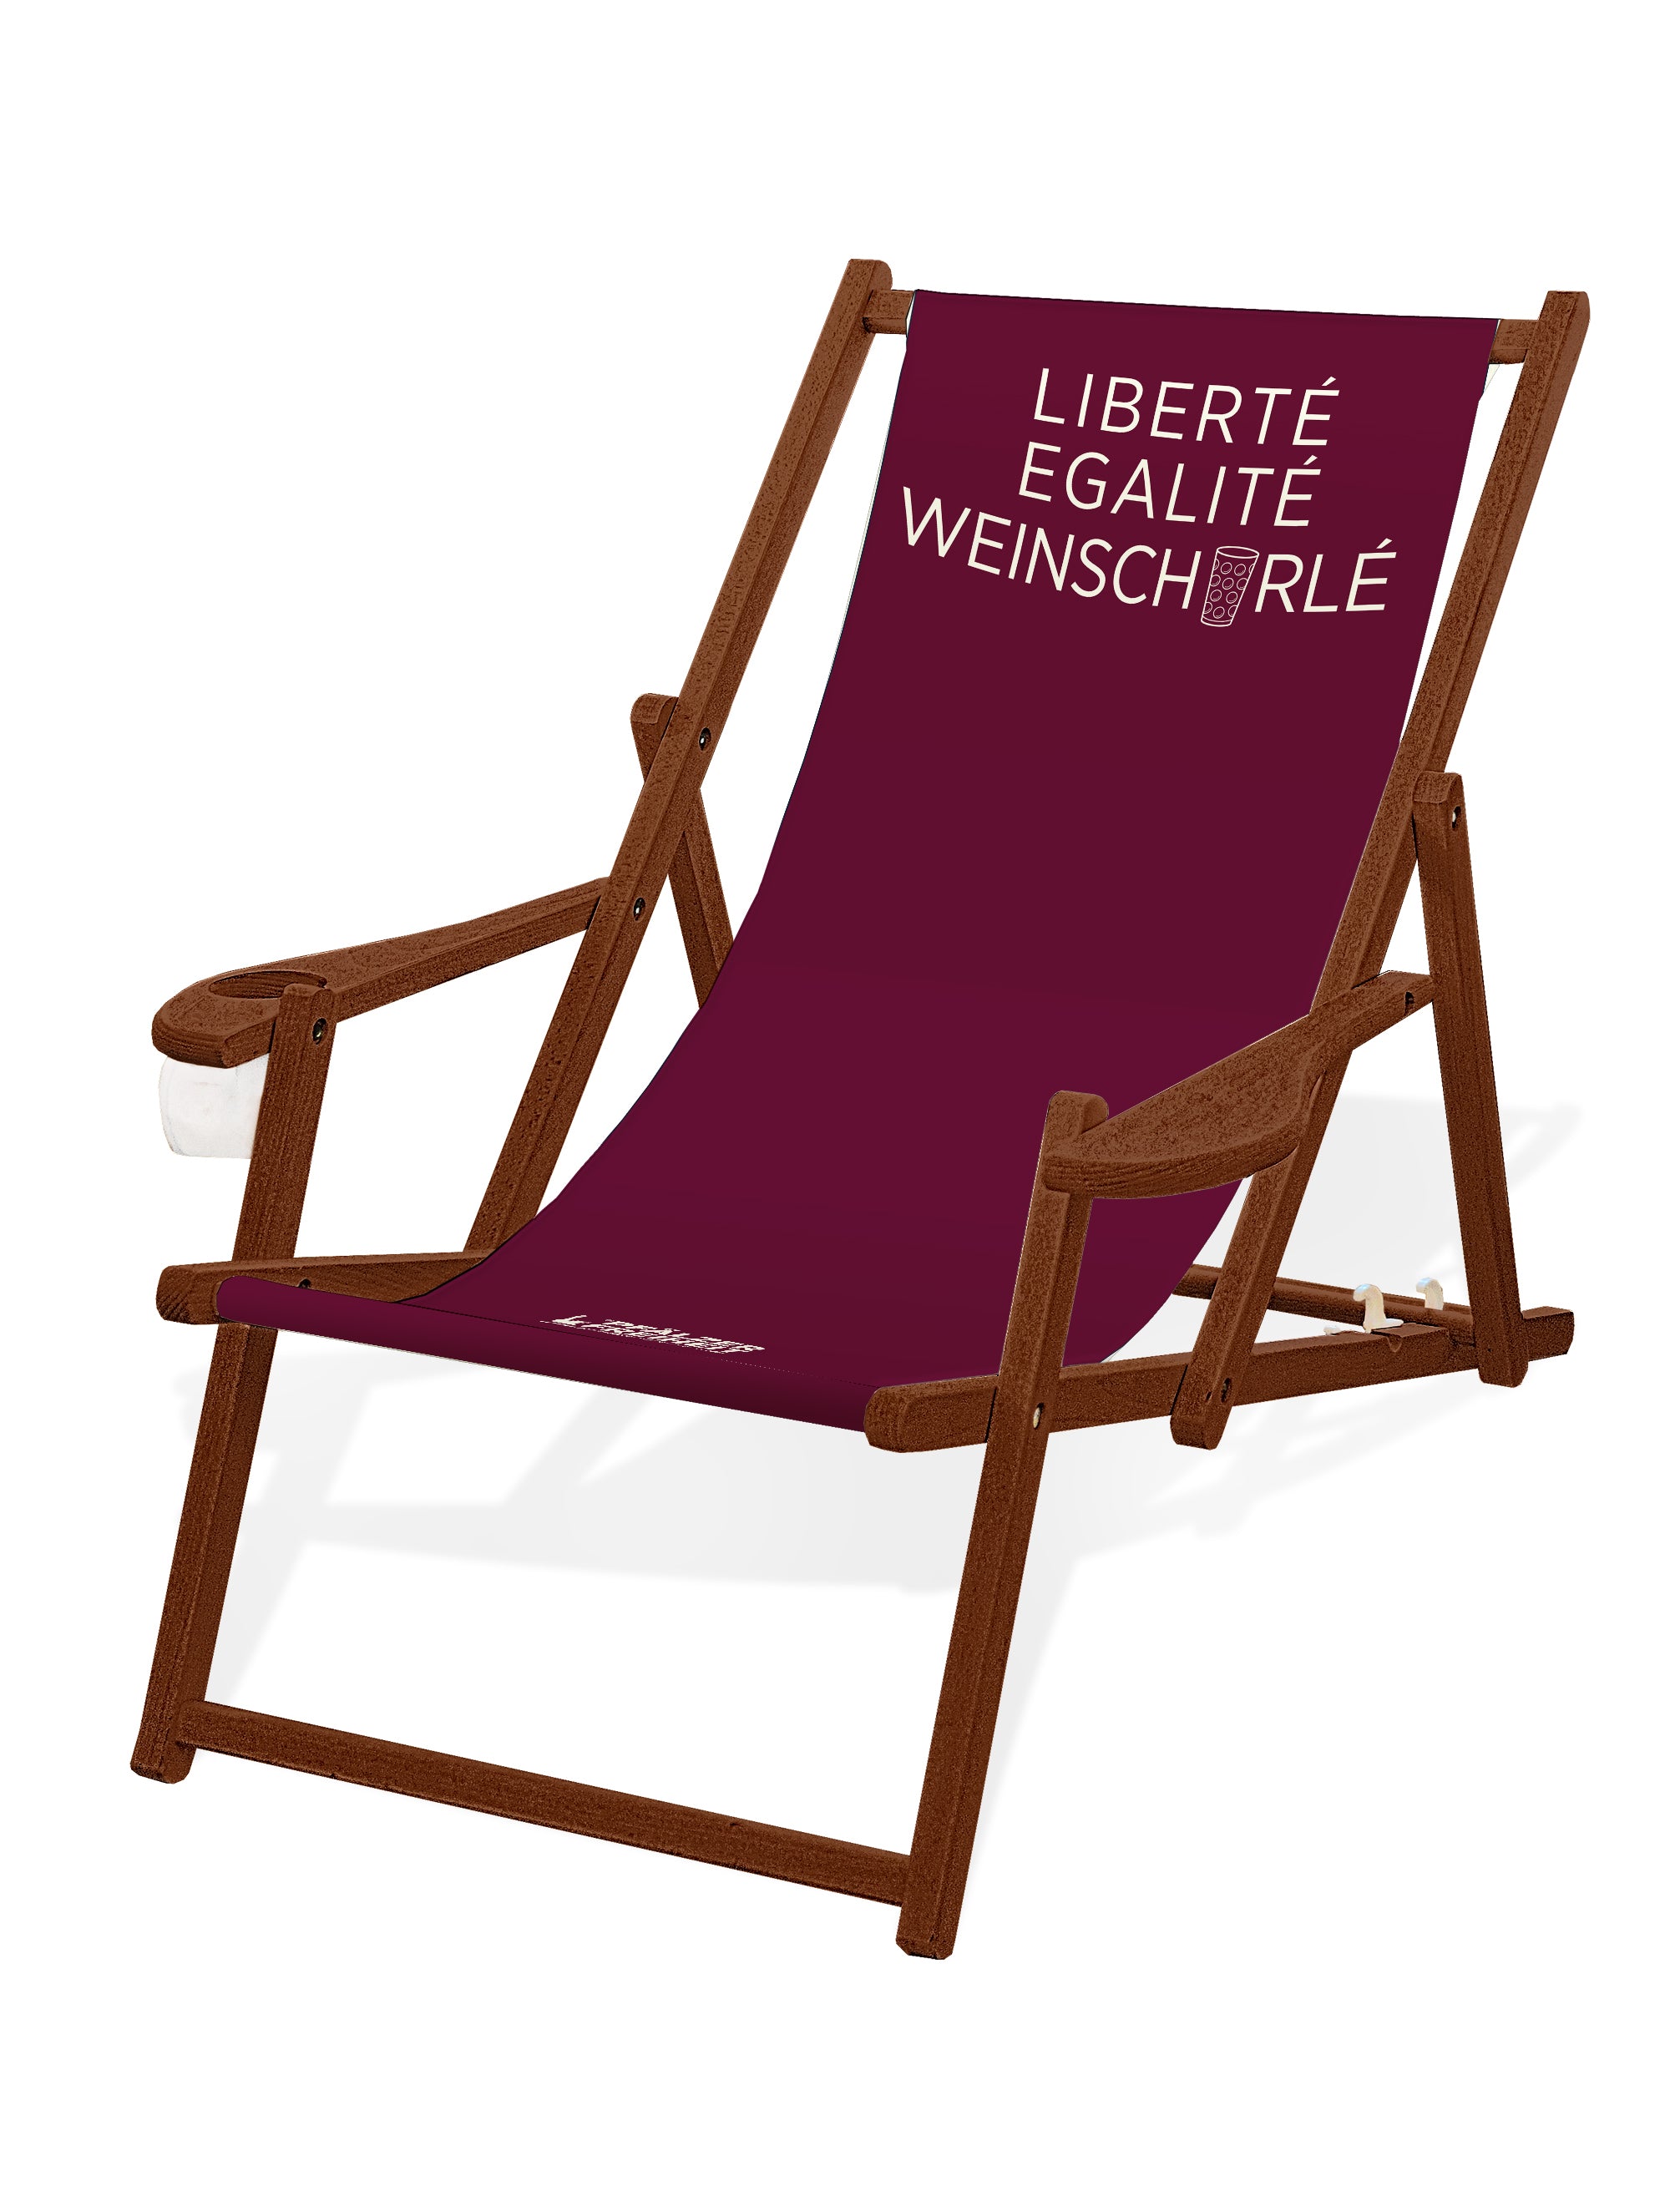 LIEGESTUHL MIT GETRÄNKEHALTER  &quot;Liberté, Egalité, Weinschorlé&quot; - Pfälzer Freiheit